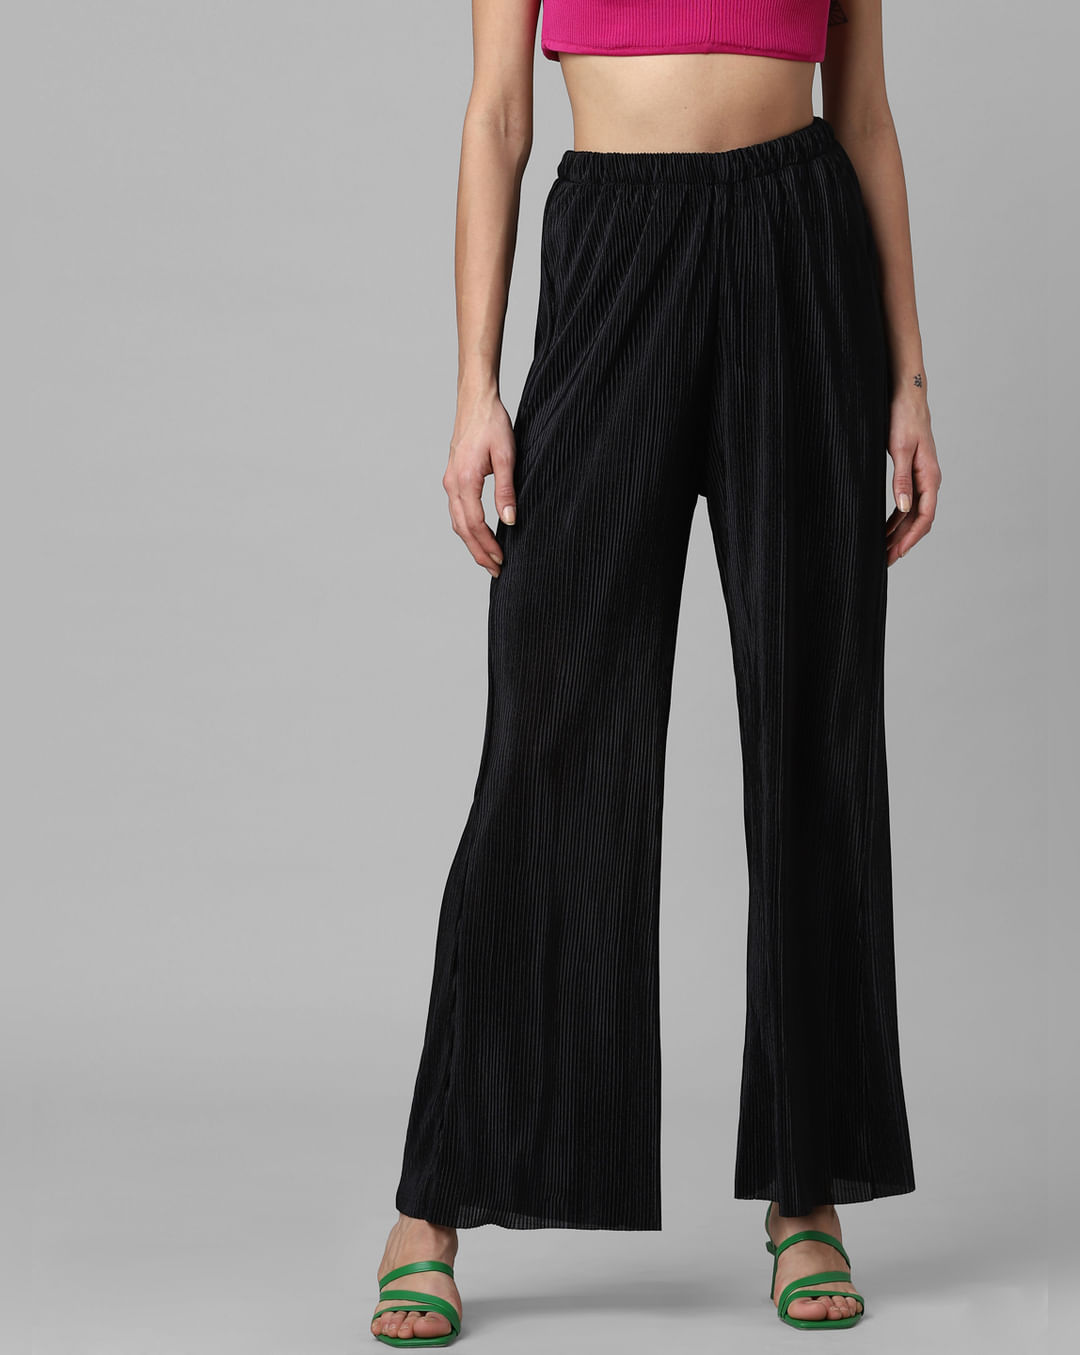 Juicy Couture Black Label Original Flare Velour Pants - 100